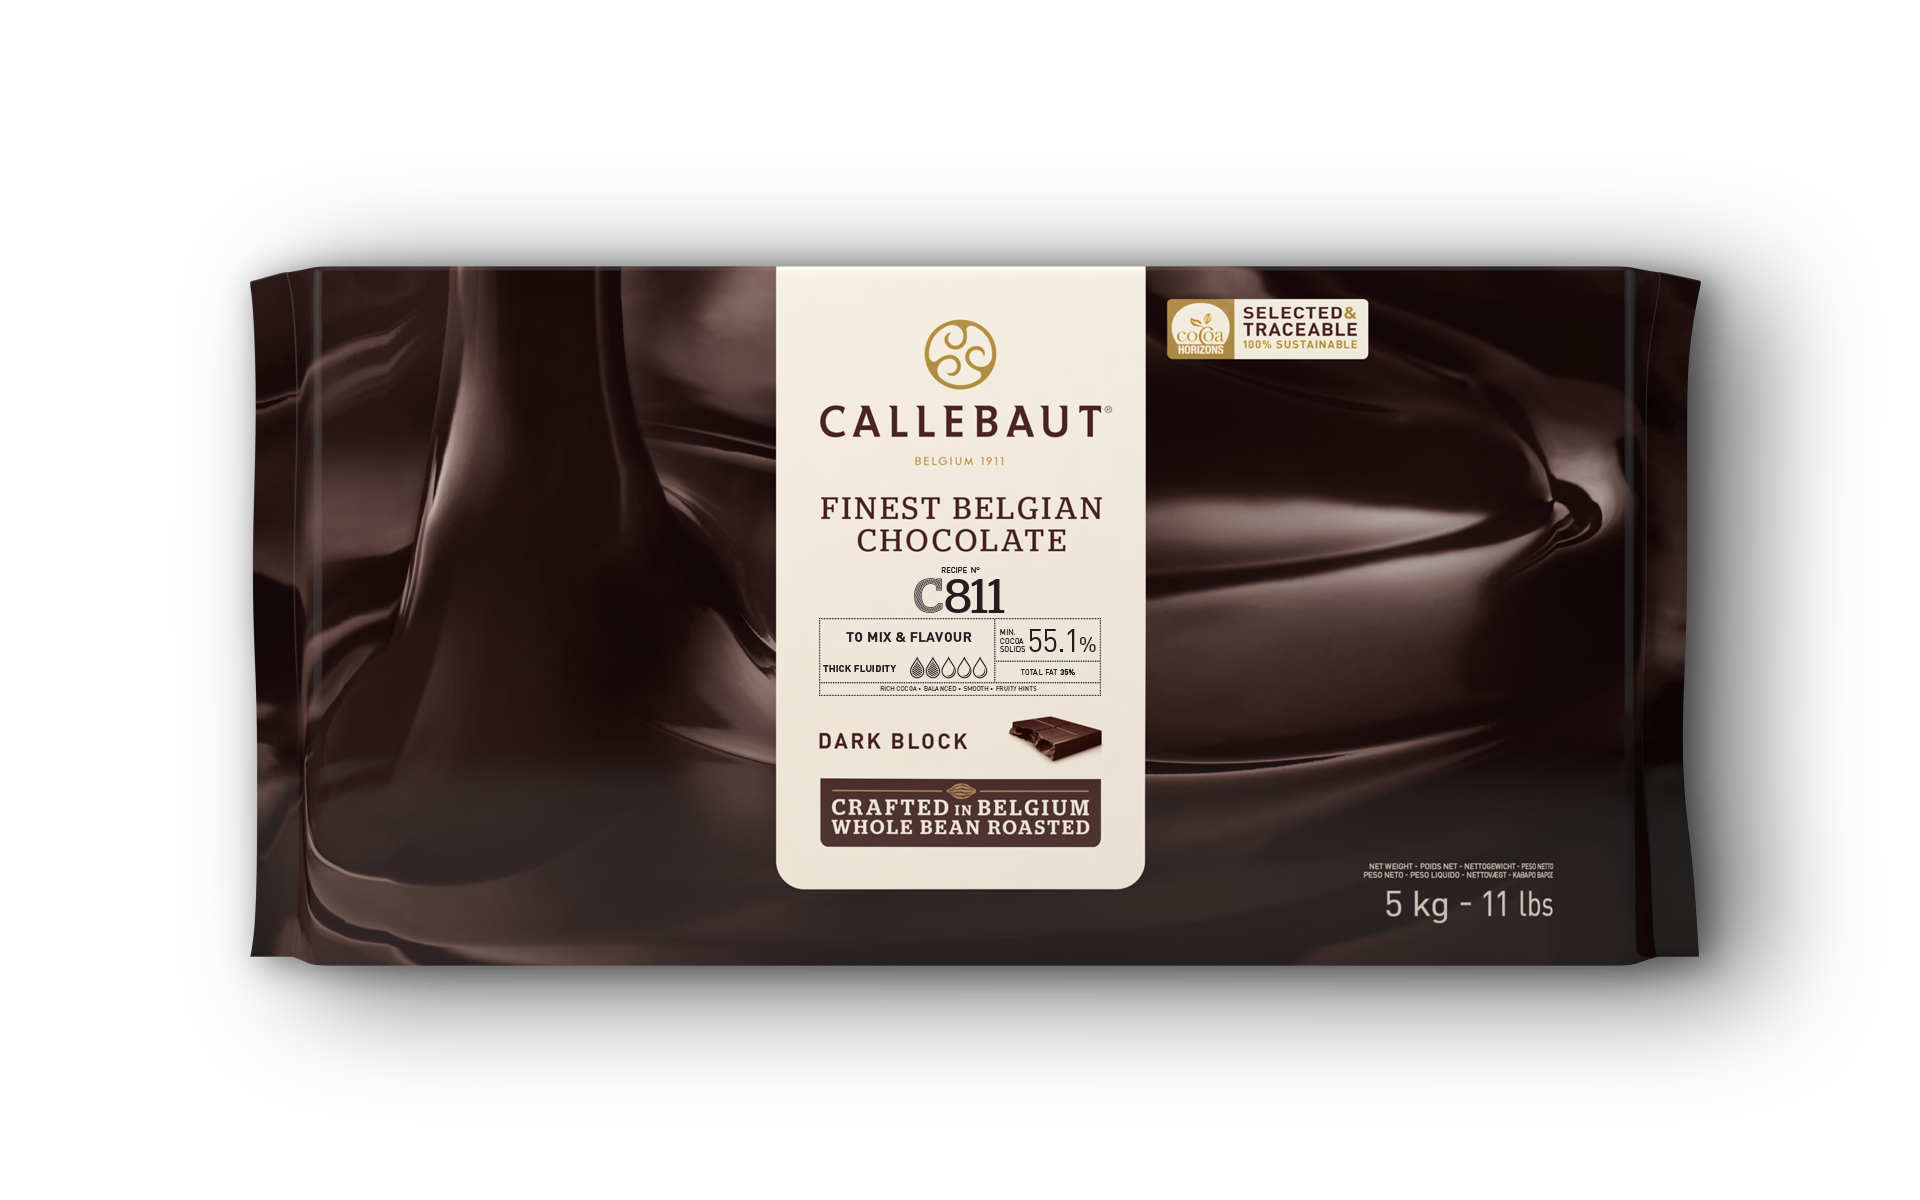 Callebaut - Dark Chocolate - C811 - 5kg Block | callebaut.com